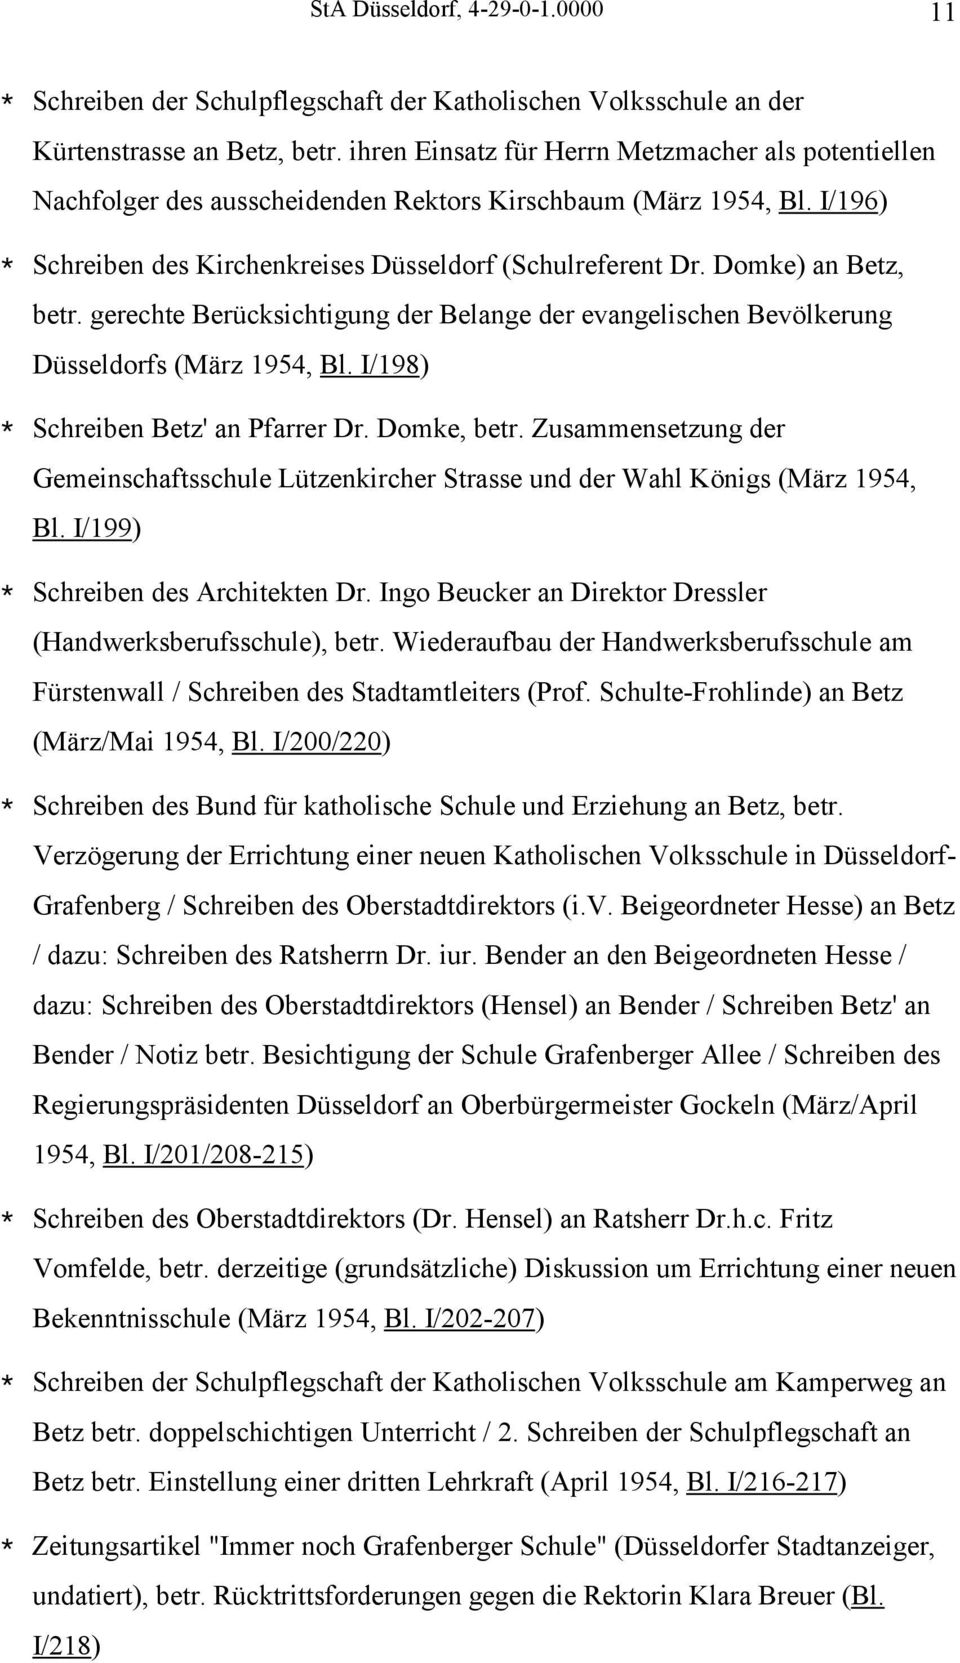 Domke) an Betz, betr. gerechte Berücksichtigung der Belange der evangelischen Bevölkerung Düsseldorfs (März 1954, Bl. I/198) * Schreiben Betz' an Pfarrer Dr. Domke, betr.